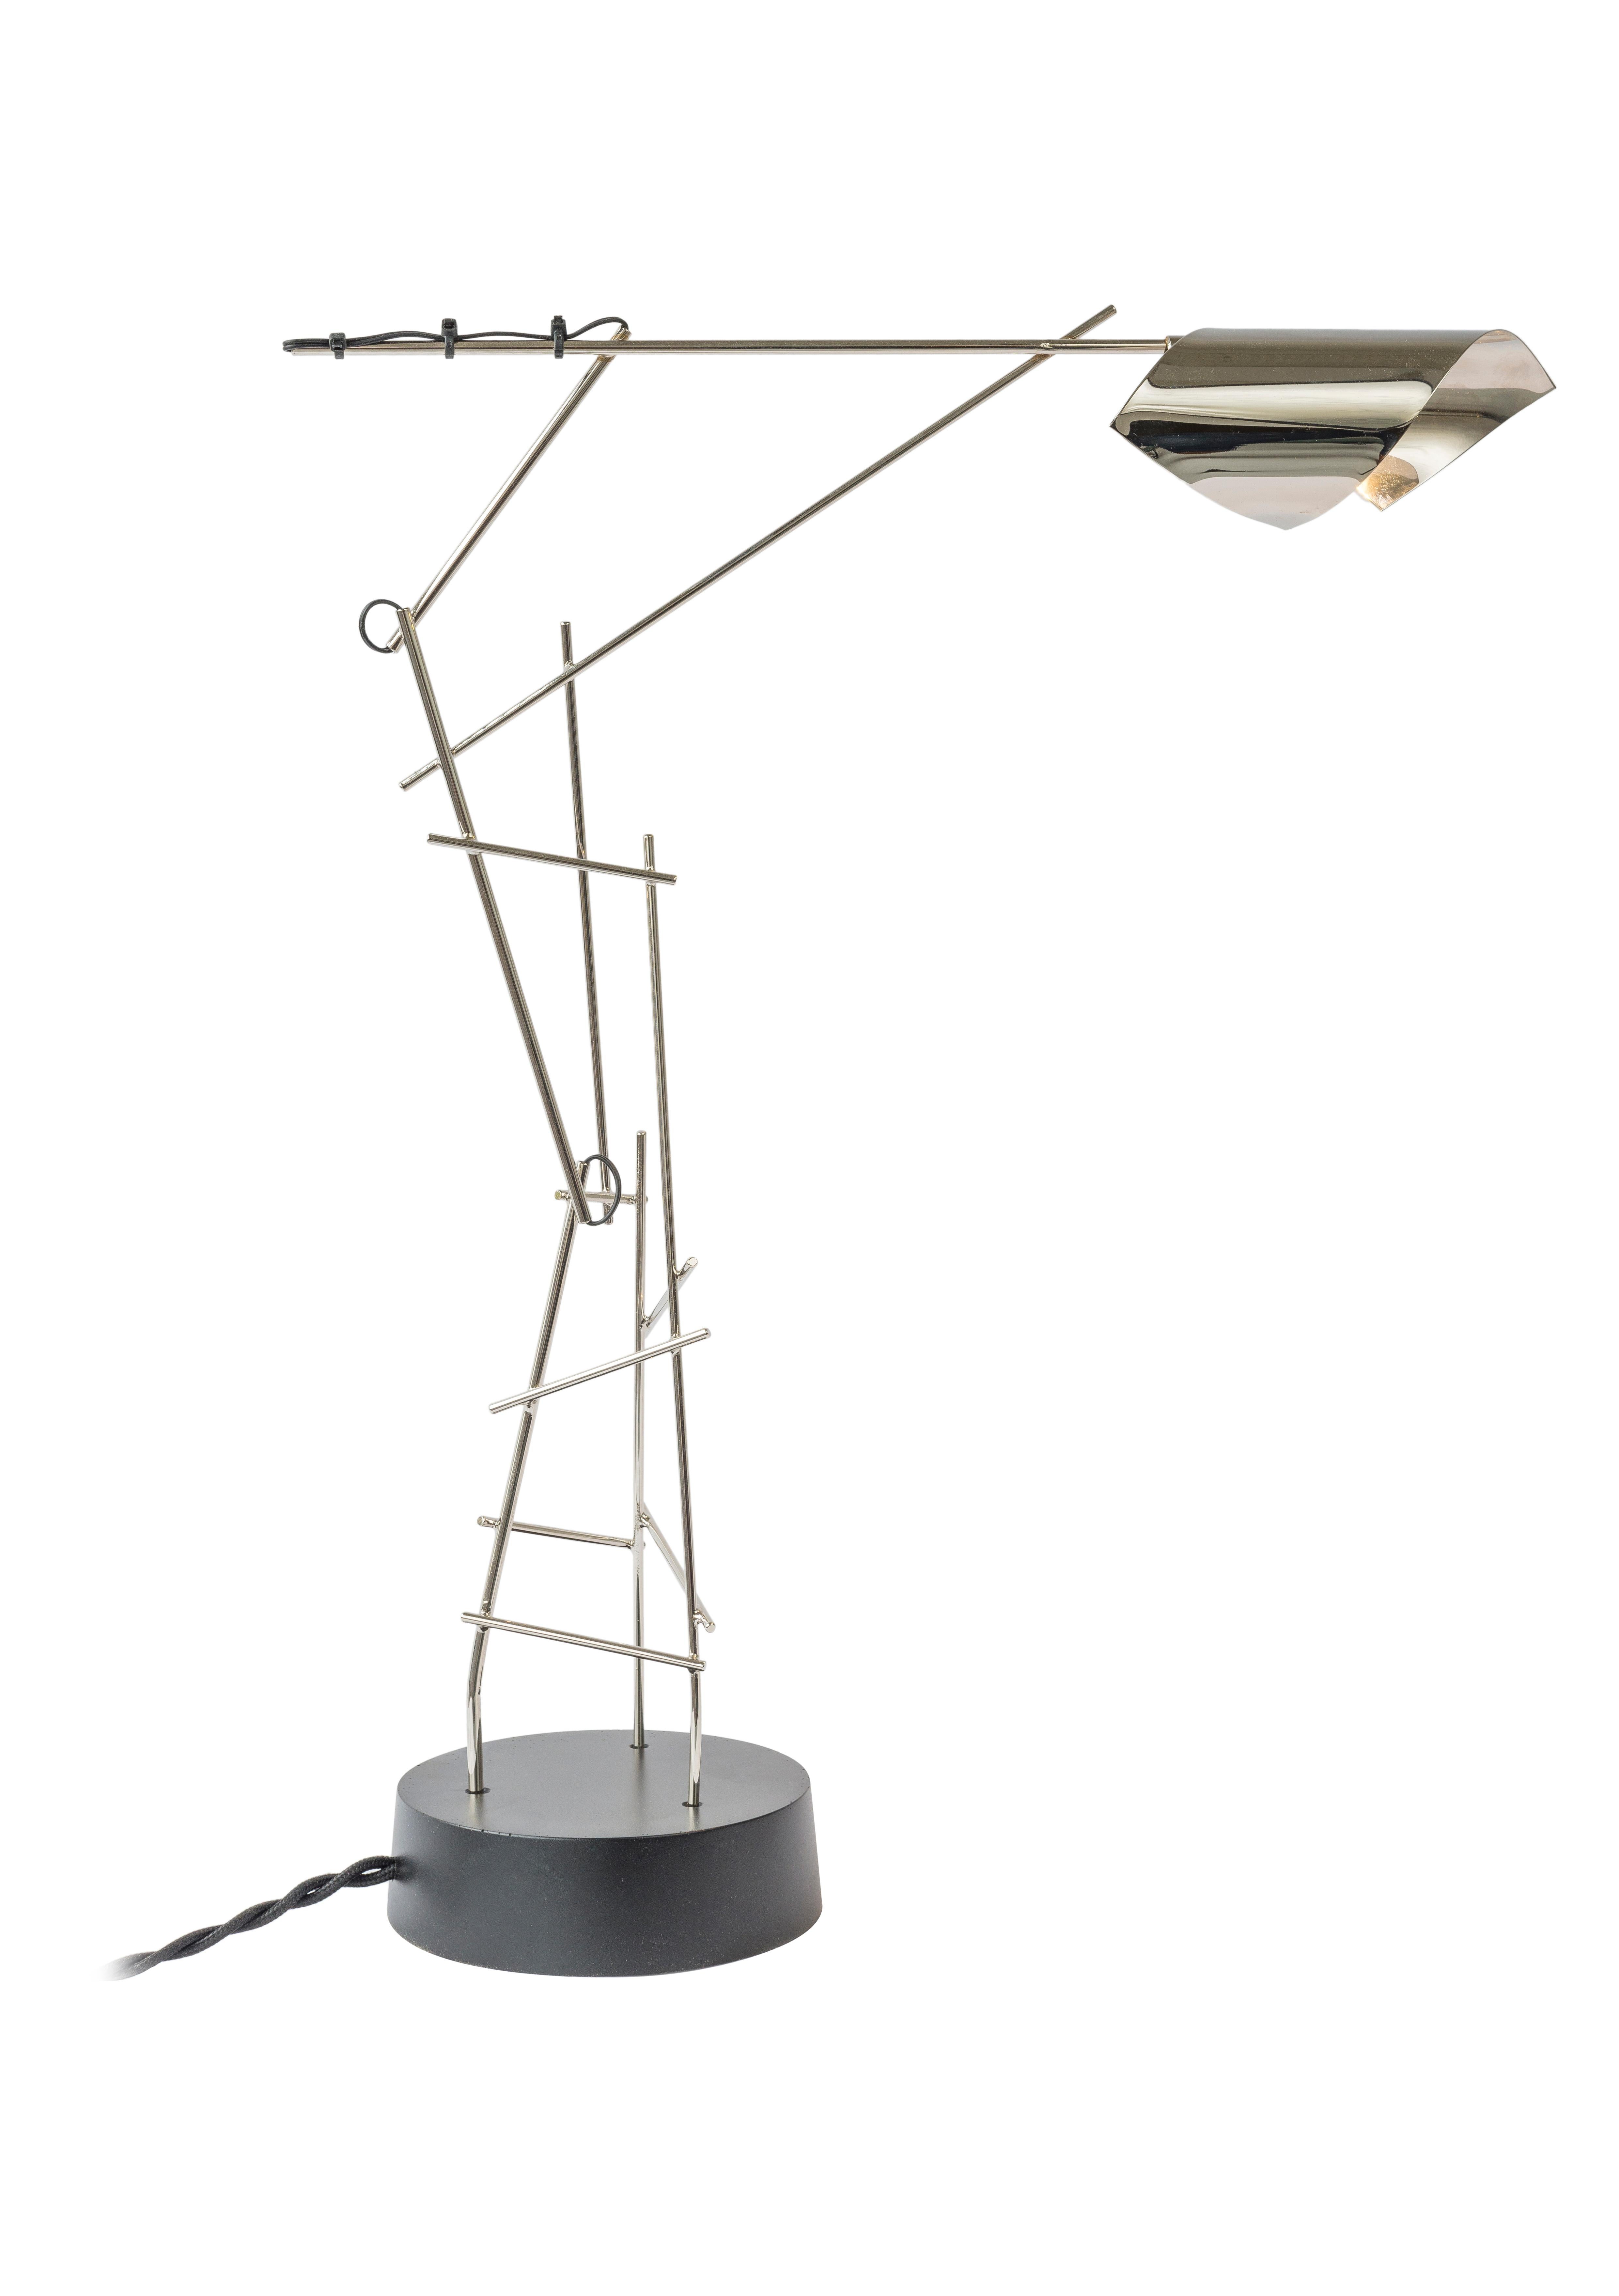 Tinkering Lamps ist eine Kollektion von minimalistischen und stilisierten Tischlampen, bei denen Joost mit ungewöhnlichen Möglichkeiten experimentiert hat, Licht einzufangen, zu reflektieren und zu zeigen. In Joosts Werkstatt erfüllt das Geräusch